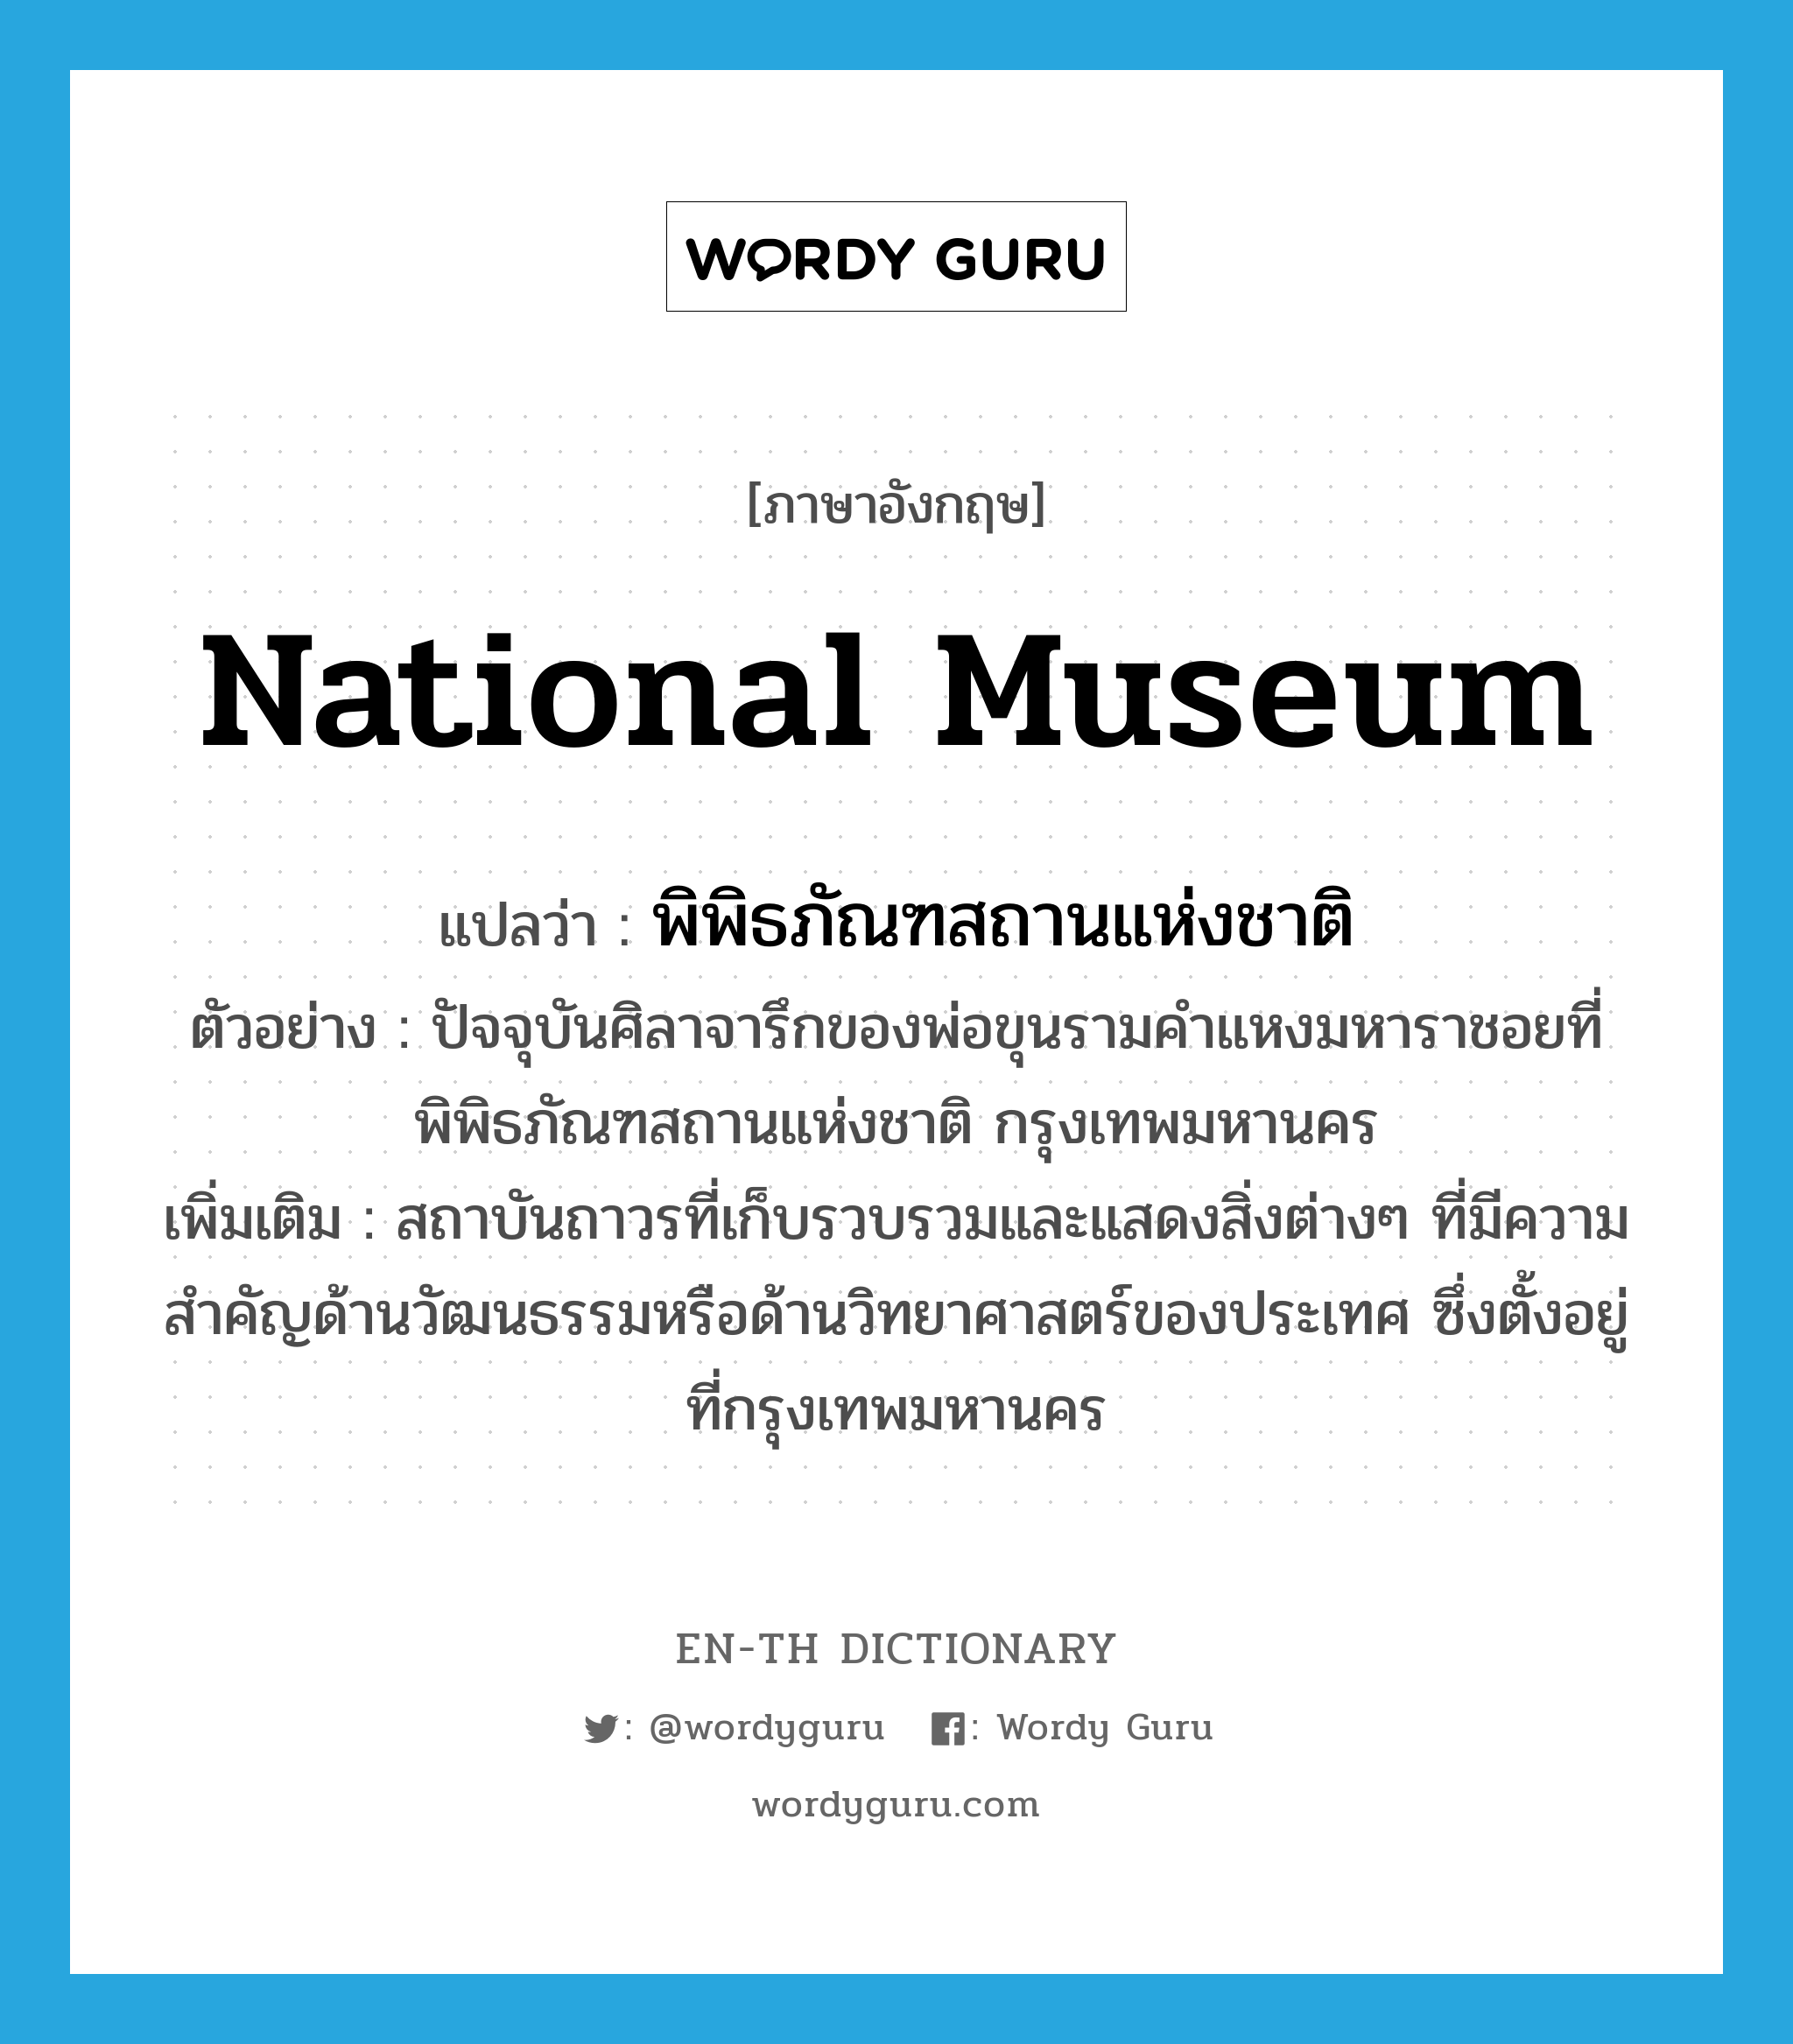 National Museum แปลว่า?, คำศัพท์ภาษาอังกฤษ National Museum แปลว่า พิพิธภัณฑสถานแห่งชาติ ประเภท N ตัวอย่าง ปัจจุบันศิลาจารึกของพ่อขุนรามคำแหงมหาราชอยที่พิพิธภัณฑสถานแห่งชาติ กรุงเทพมหานคร เพิ่มเติม สถาบันถาวรที่เก็บรวบรวมและแสดงสิ่งต่างๆ ที่มีความสำคัญด้านวัฒนธรรมหรือด้านวิทยาศาสตร์ของประเทศ ซึ่งตั้งอยู่ที่กรุงเทพมหานคร หมวด N